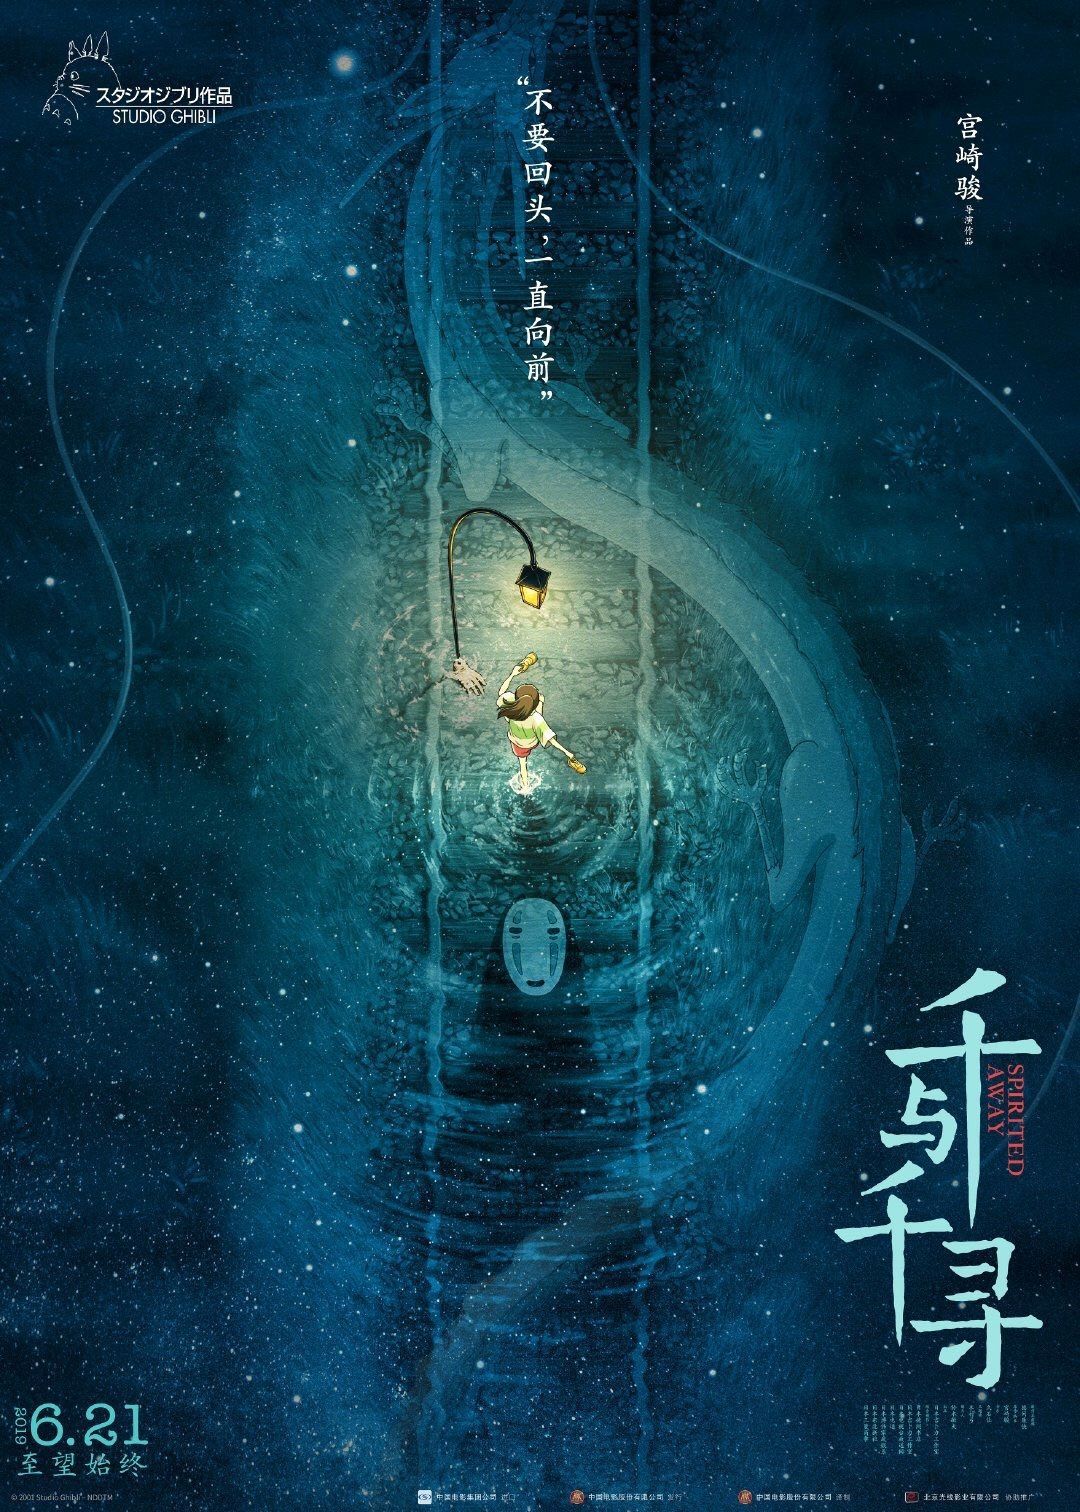 Ghibli iPhone Wallpaper